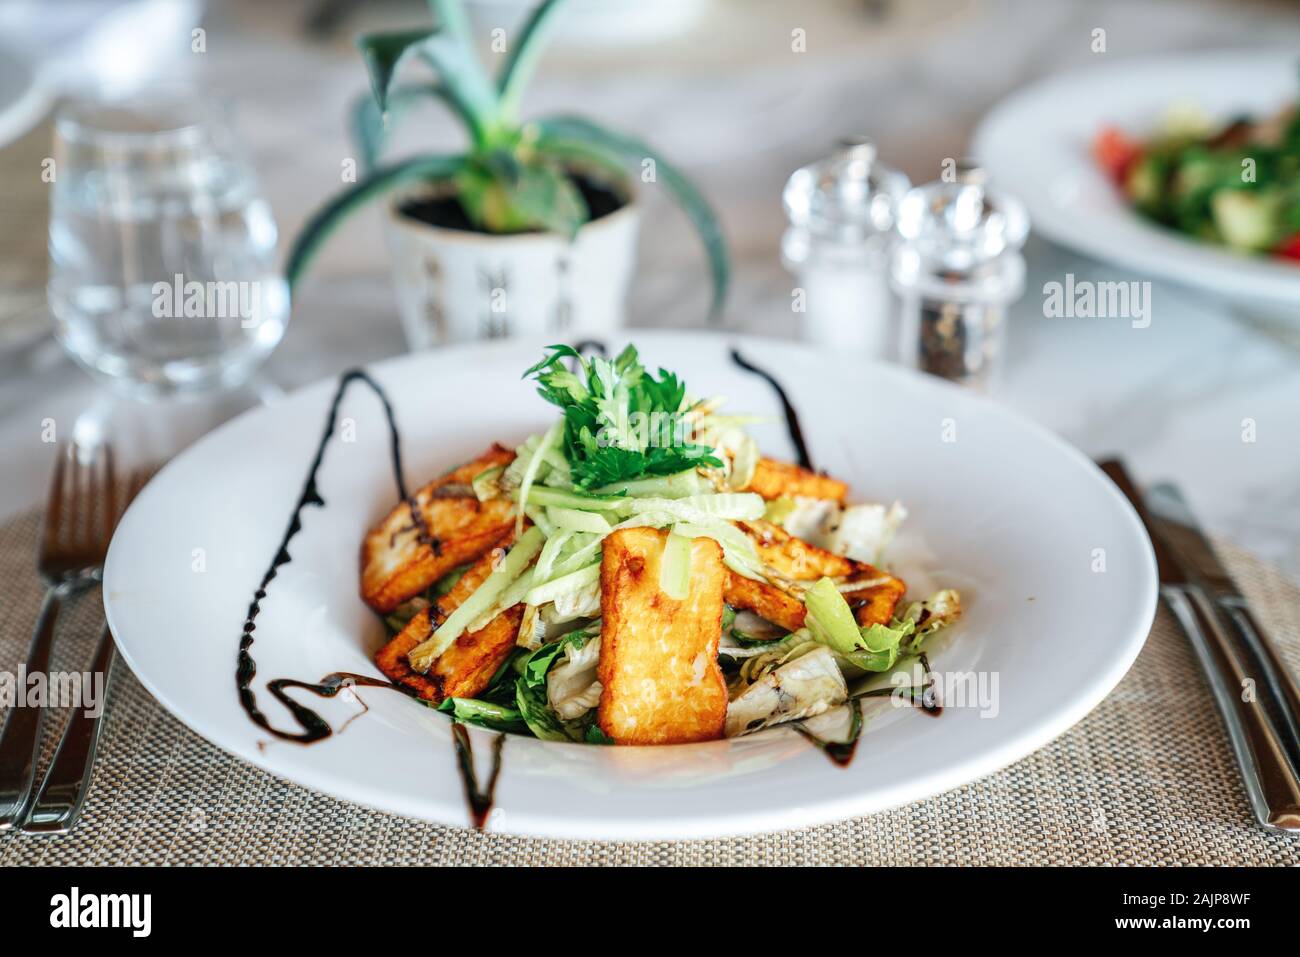 Eine köstliche hellumi Käse Salat ist in einem eleganten Restaurant oder Hotel serviert. Stockfoto